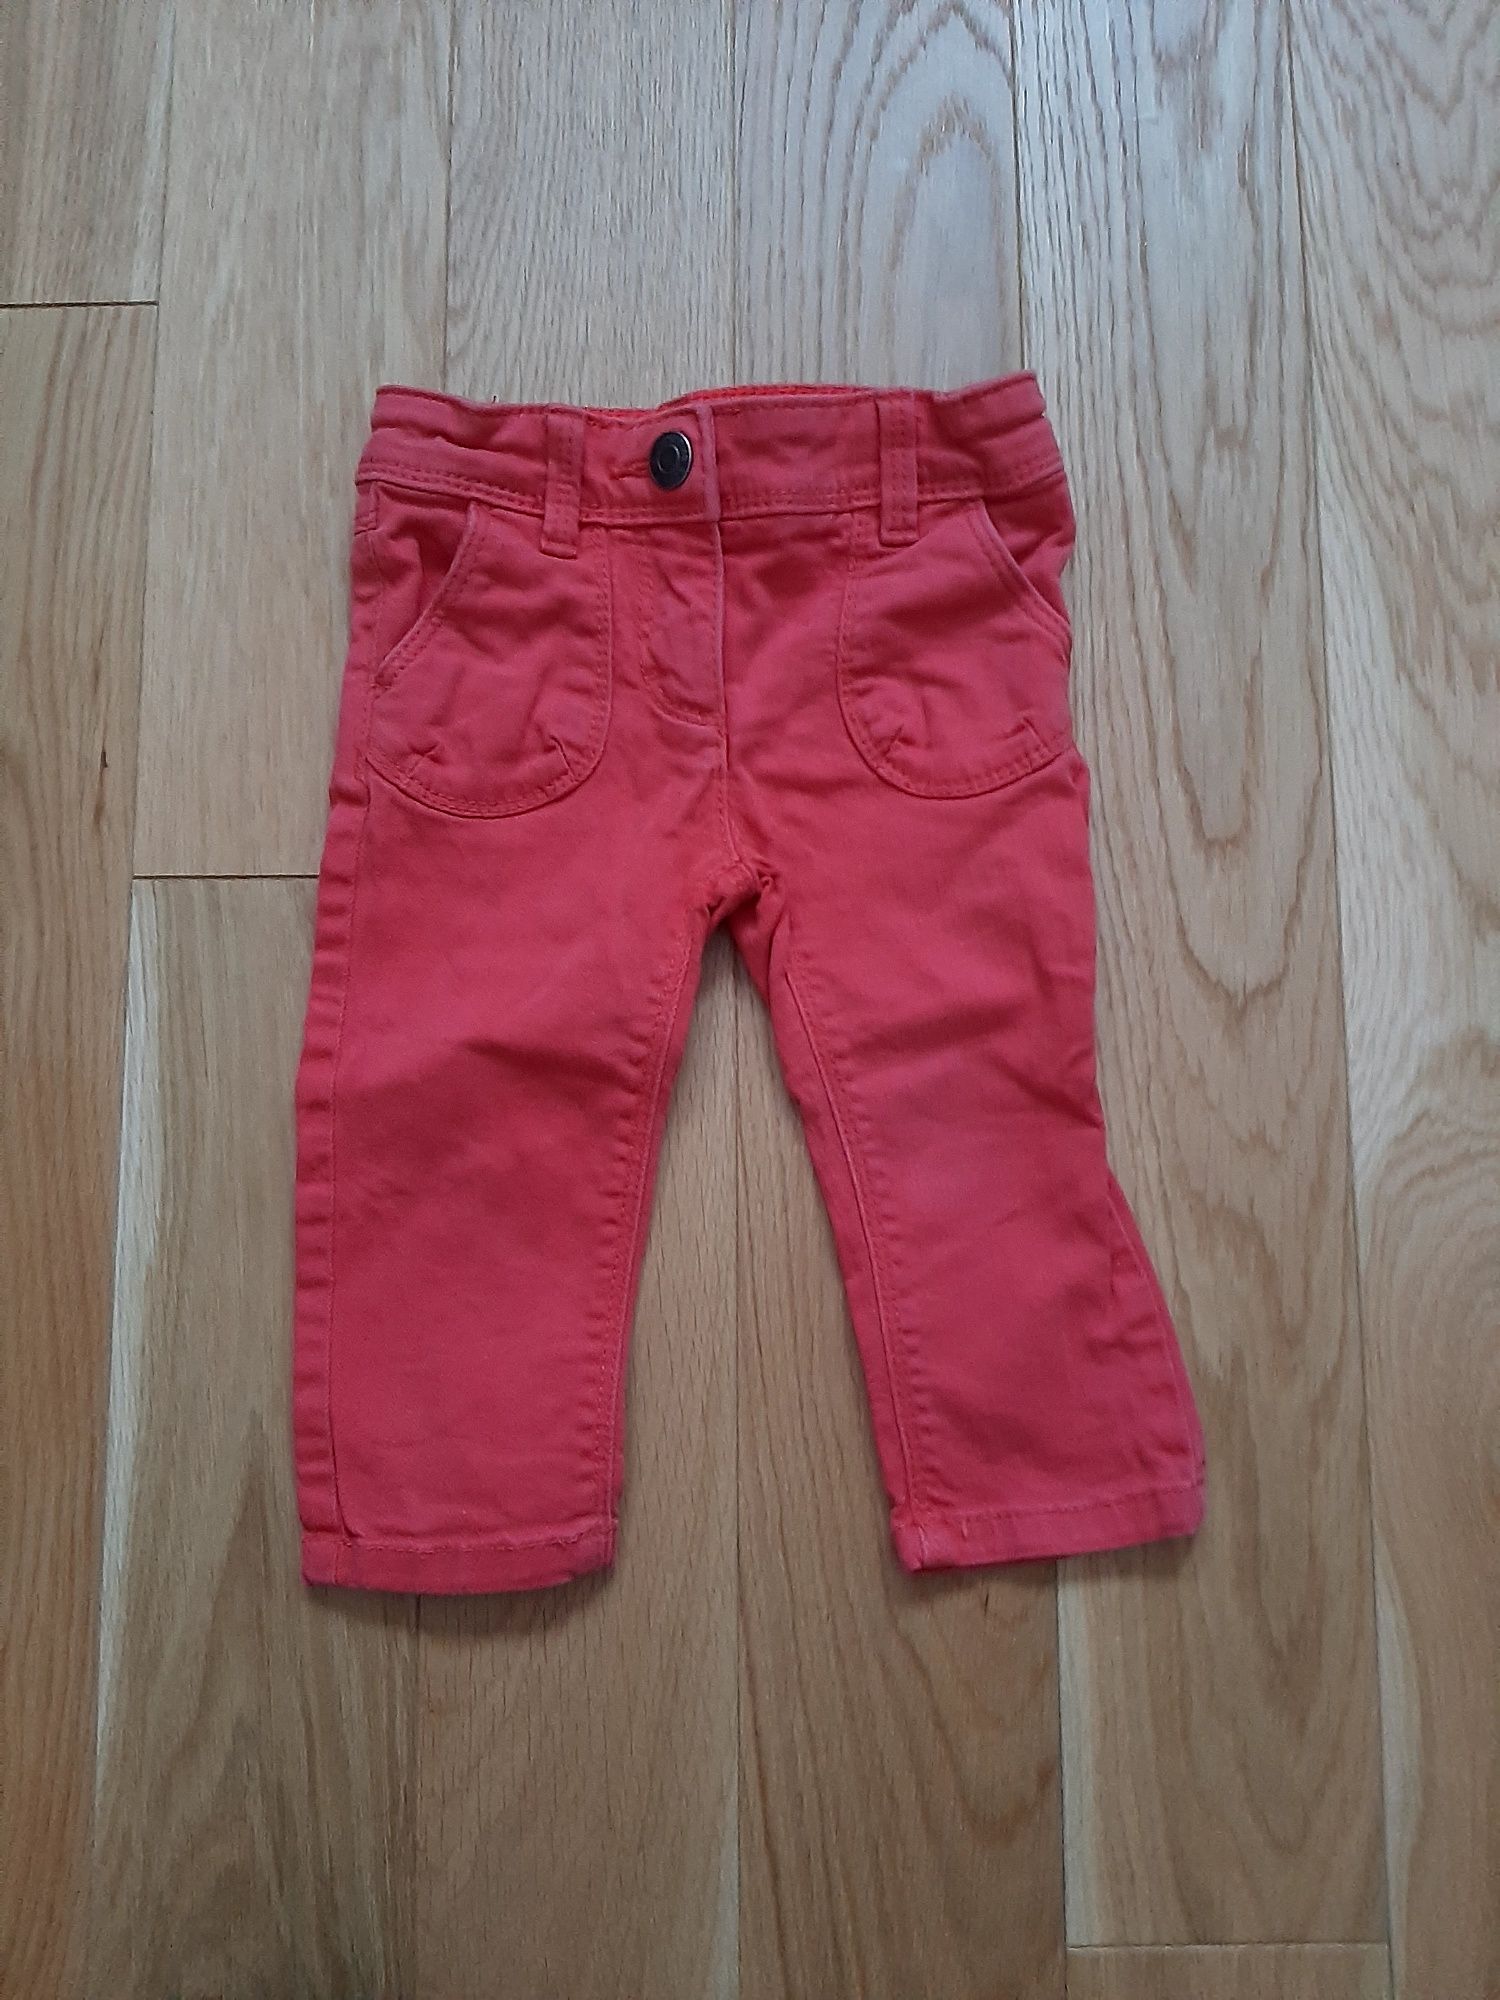 Czerwone koralowe spodnie spodenki Esprit 92